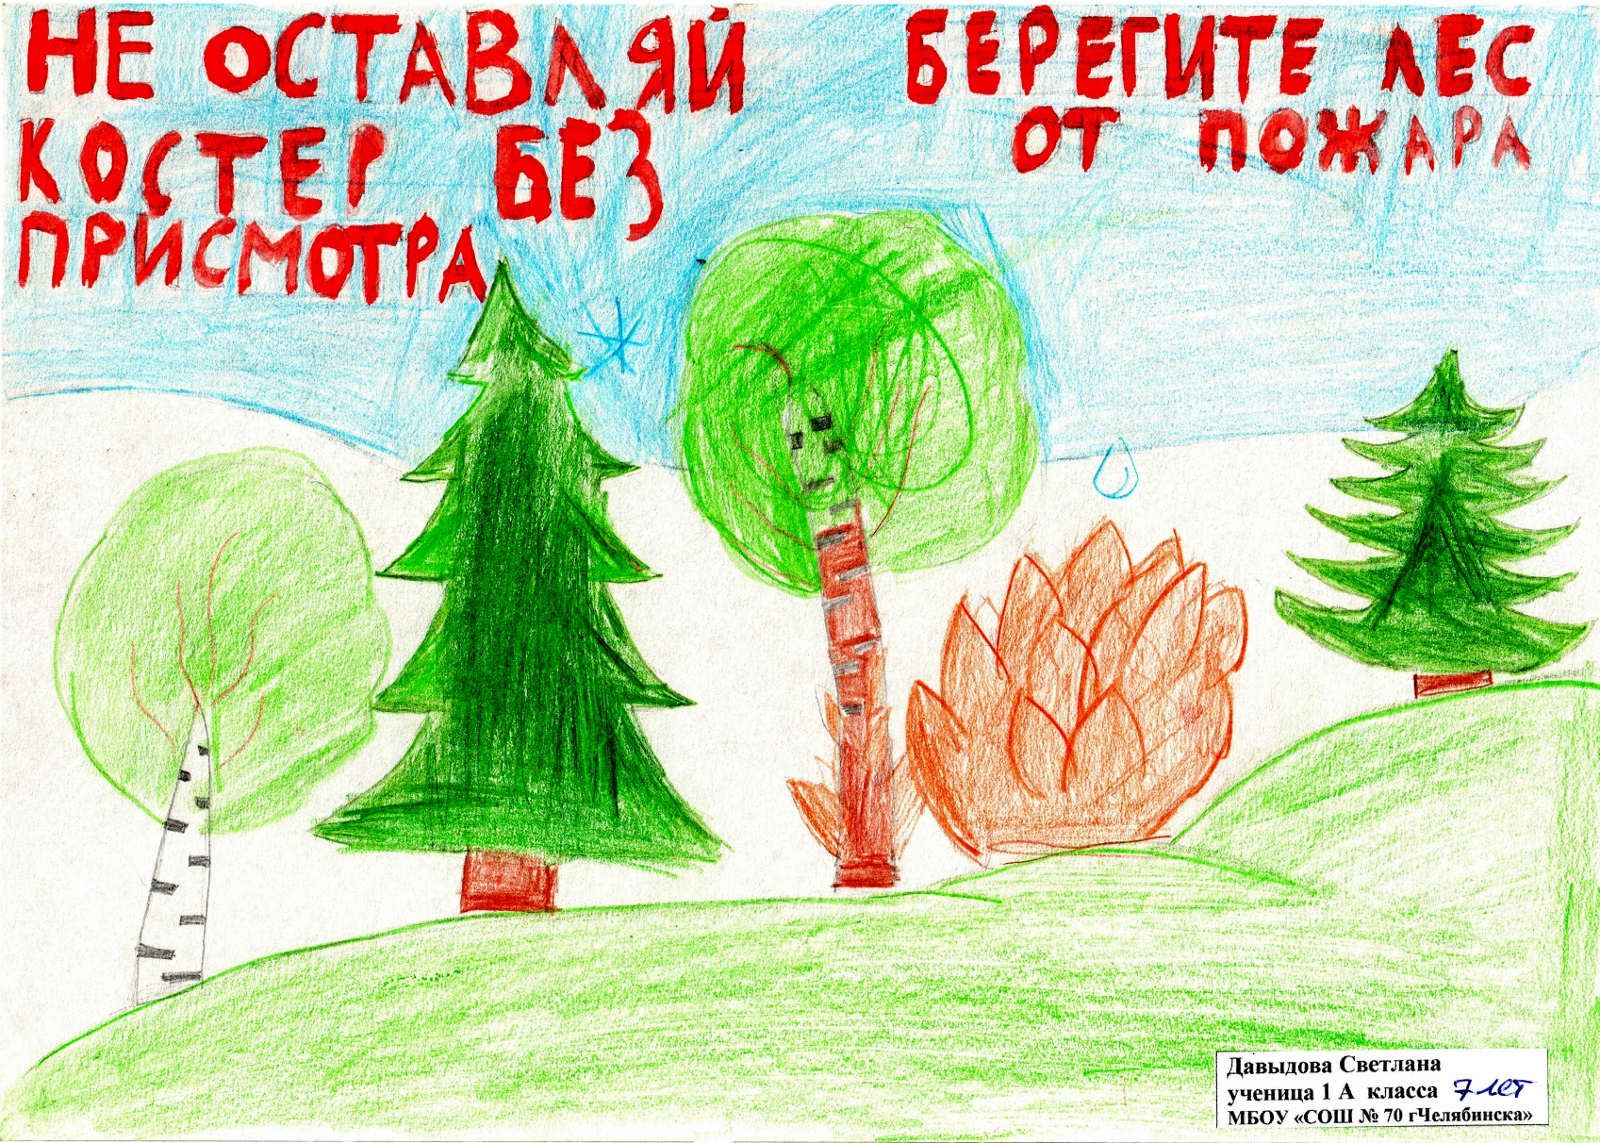 Давыдова Светлана, 1 класс, школа 70 г. Челябинска. Берегите лес от пожара!